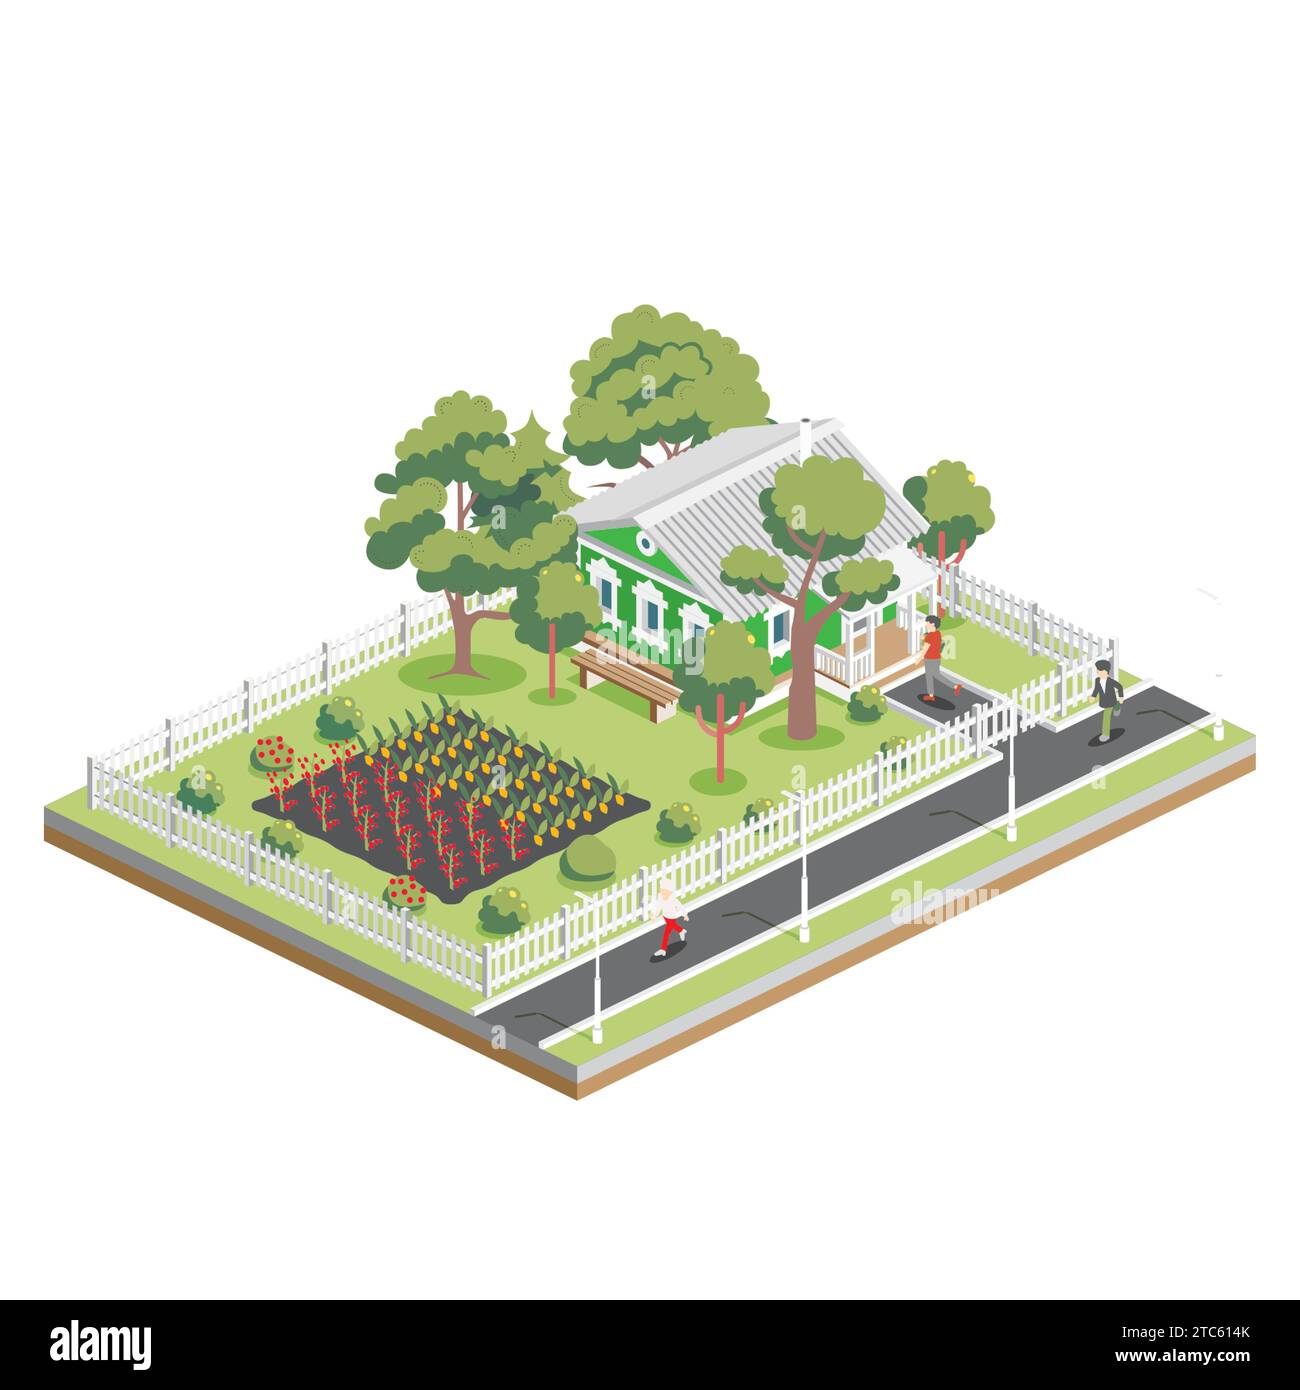 Vecchia casa isometrica con alberi e orti in periferia. Elemento infografico. Illustrazione vettoriale. Fattoria isolata su sfondo bianco. Illustrazione Vettoriale